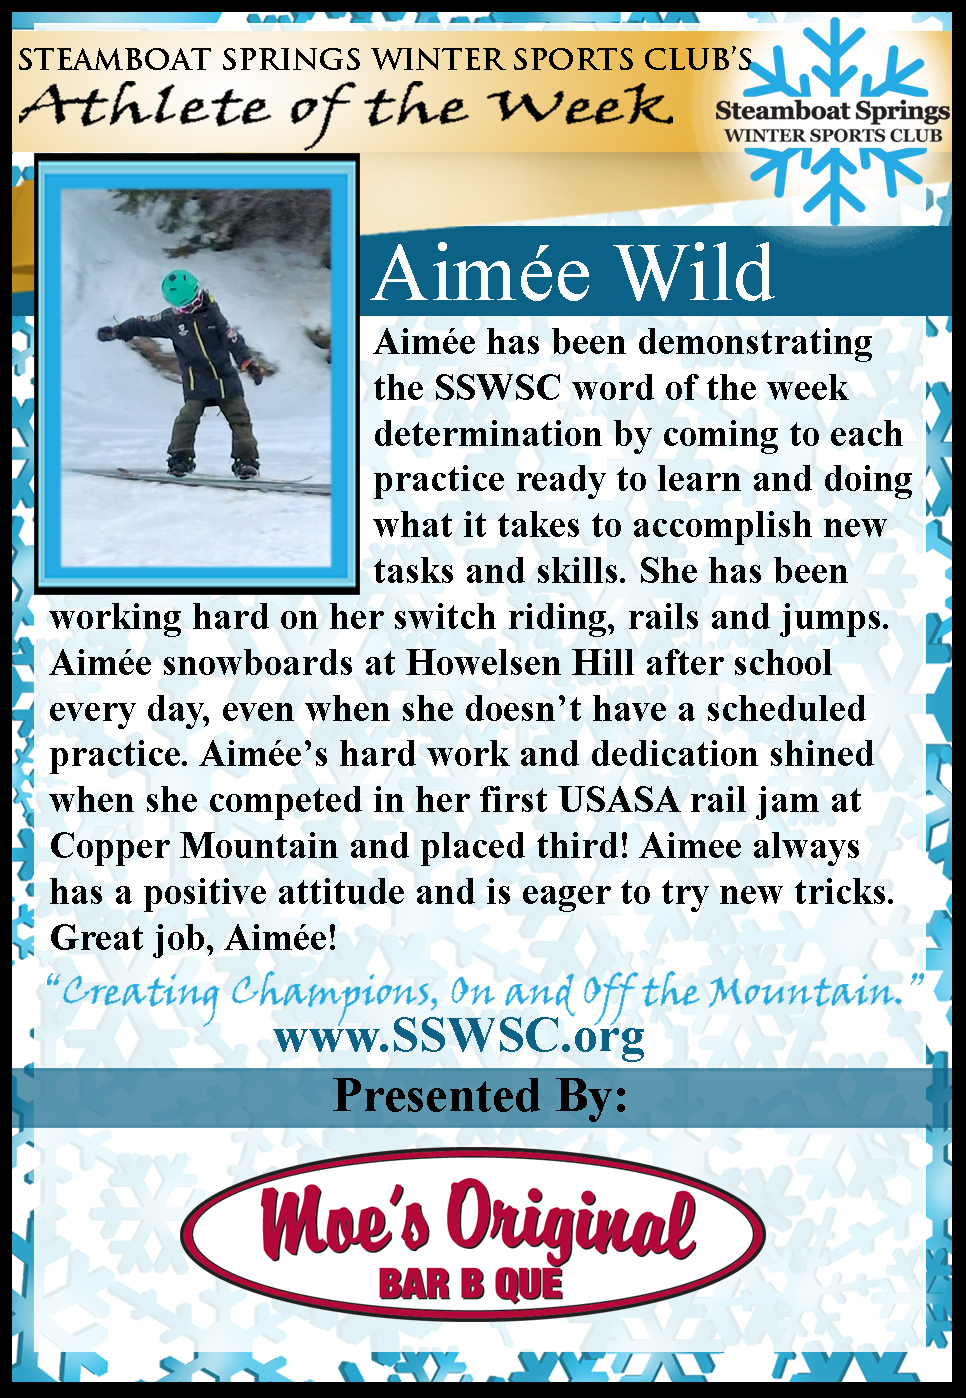 Athlete of the Week, Aimee Wild